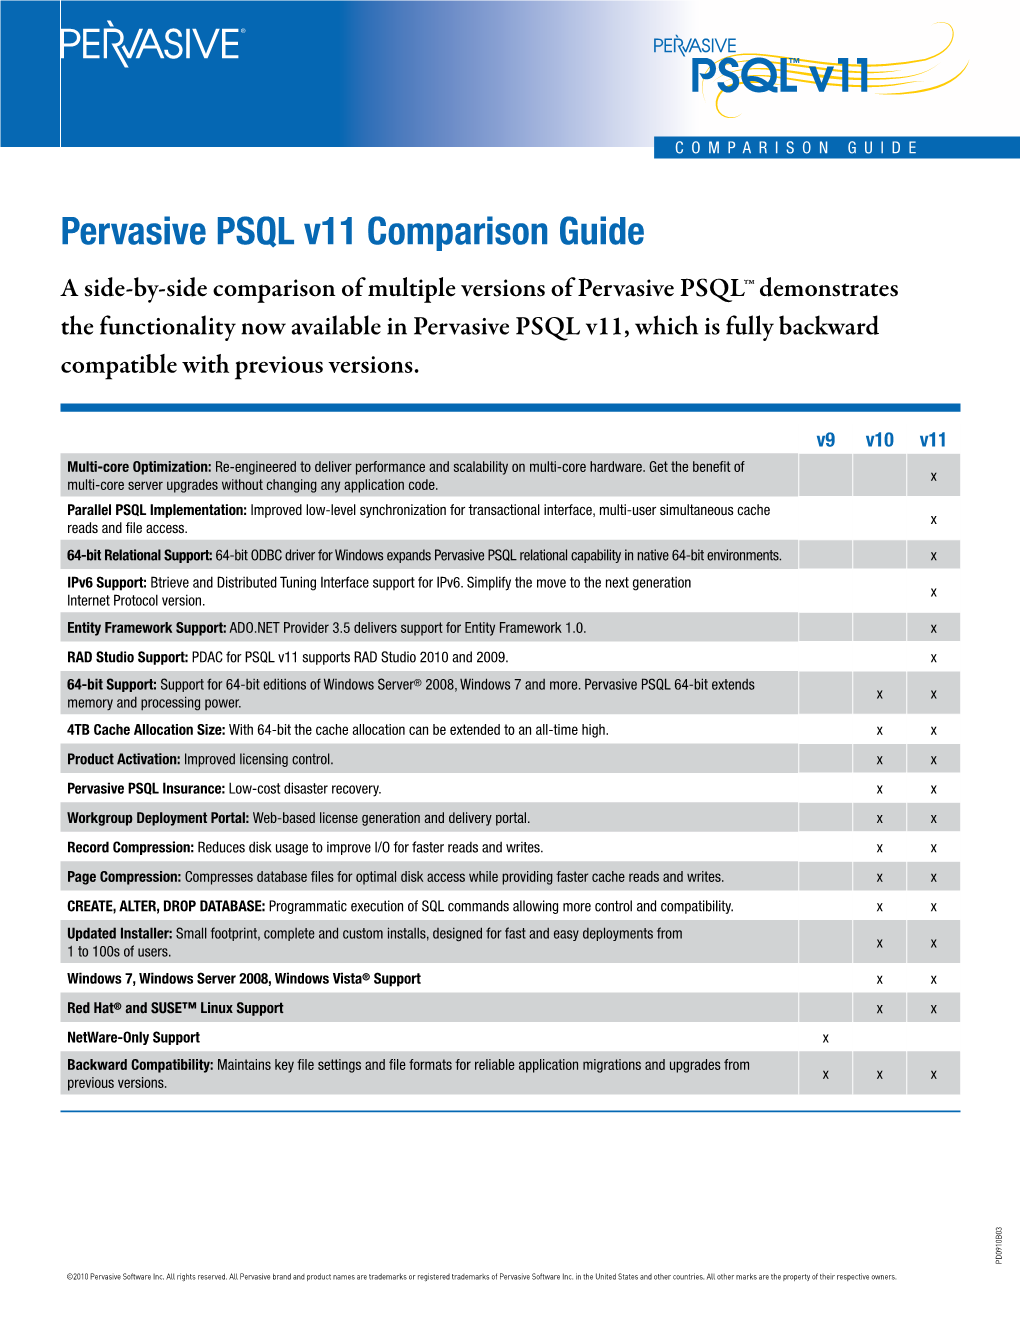 Pervasive PSQL V11 Comparison Guide